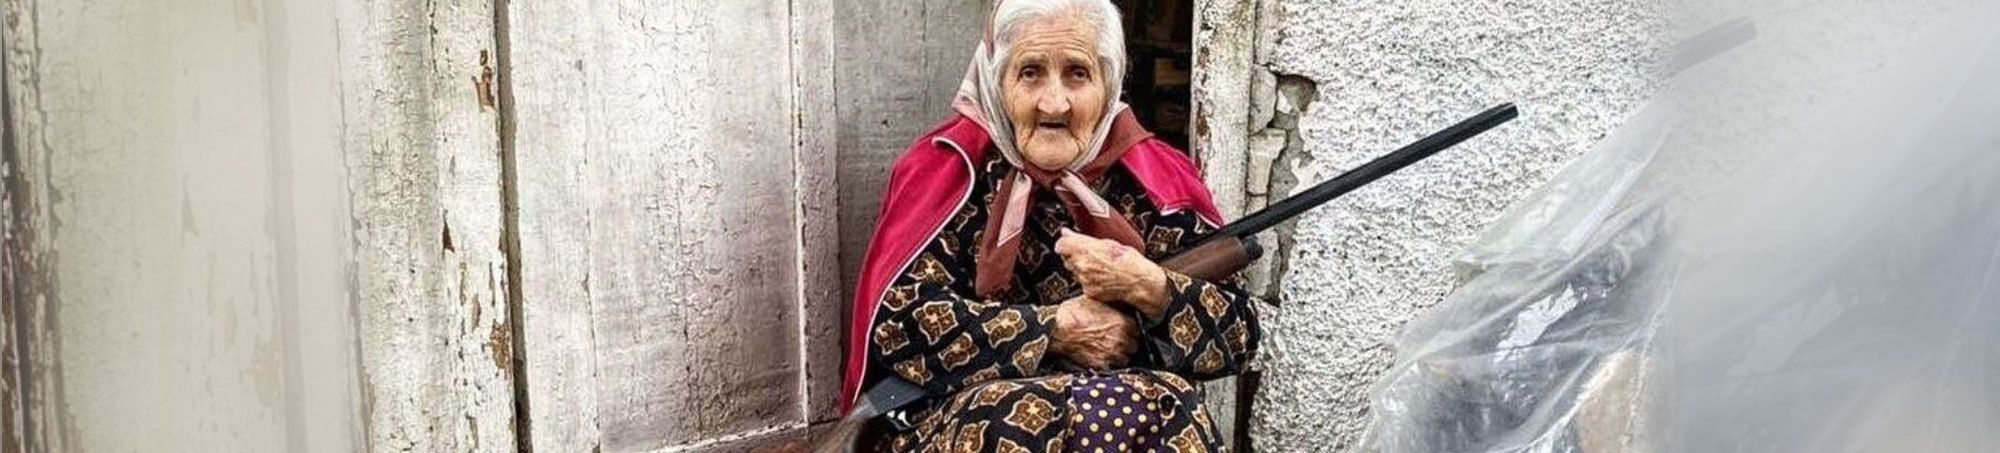 Armenian Grandmother Sharnakh defending Homeland with rifle. Artsakh (Nagorno Karabakh)